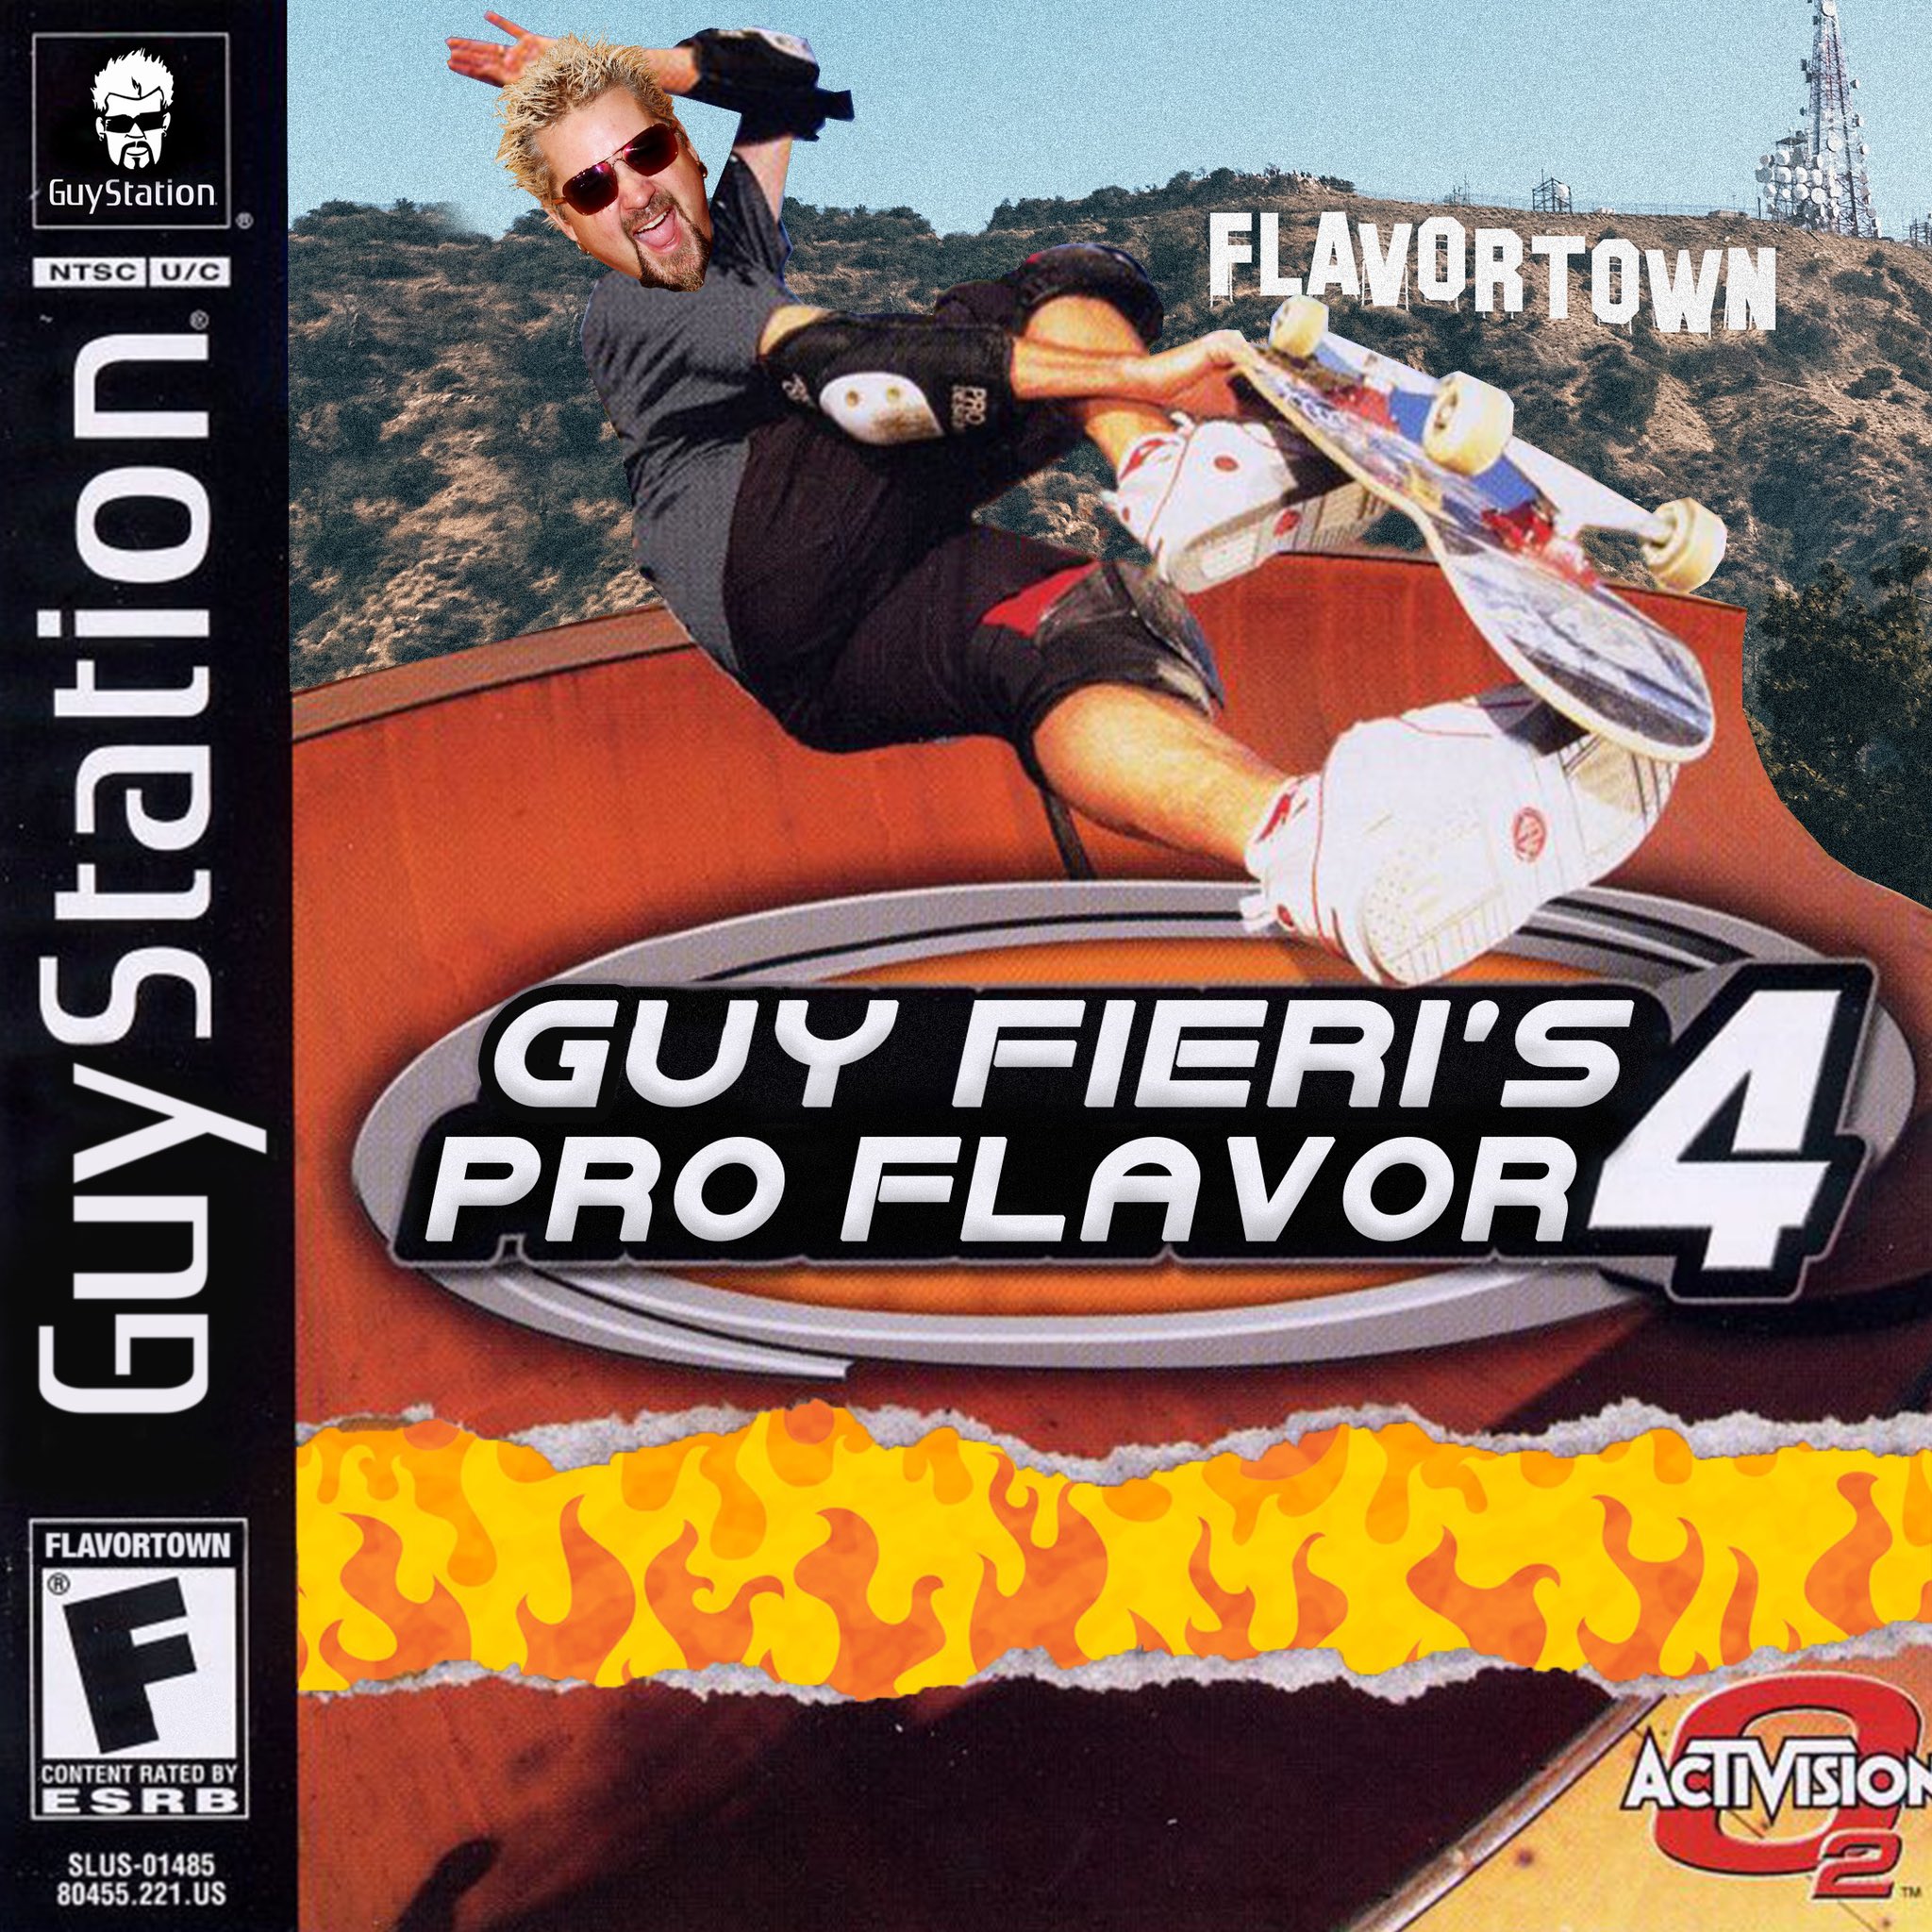 guy fieri crossover memes - guy fieri's pro flavor 4 tony hawk's pro skater flavortown